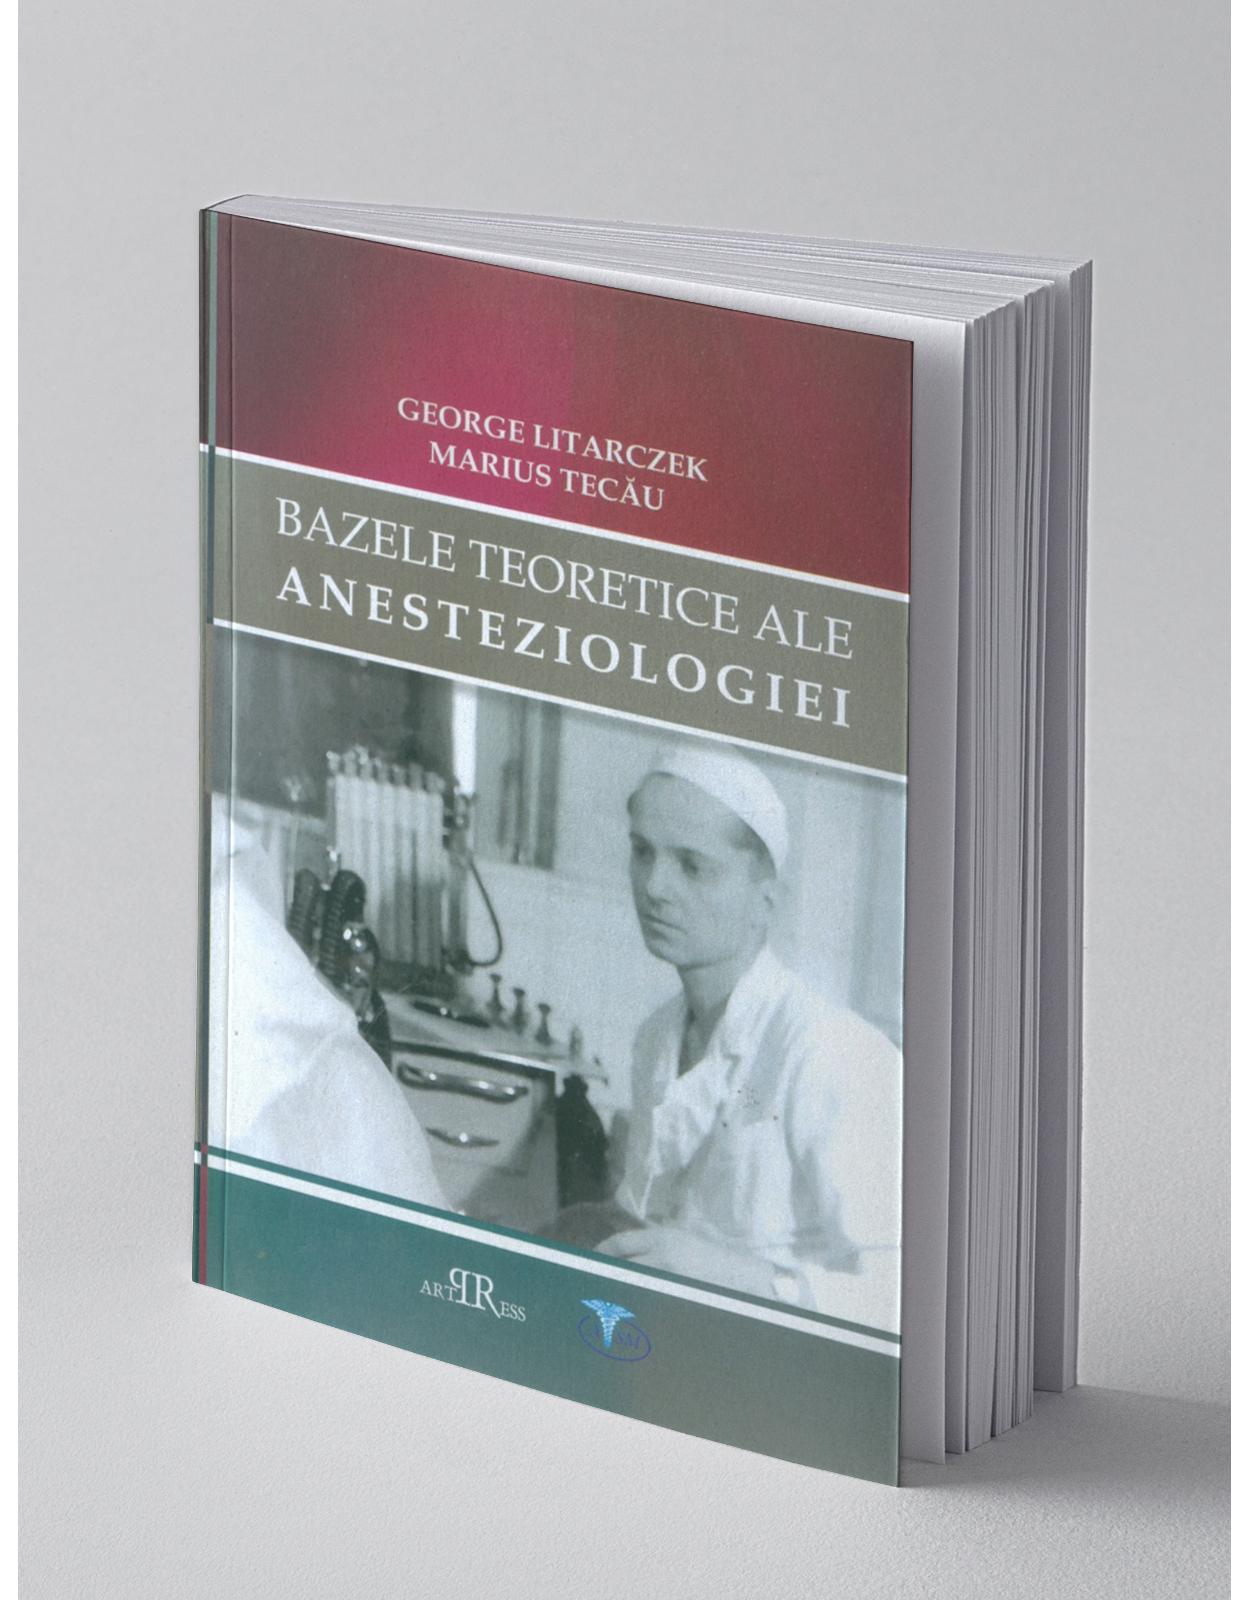 Bazele teoretice ale anesteziologiei